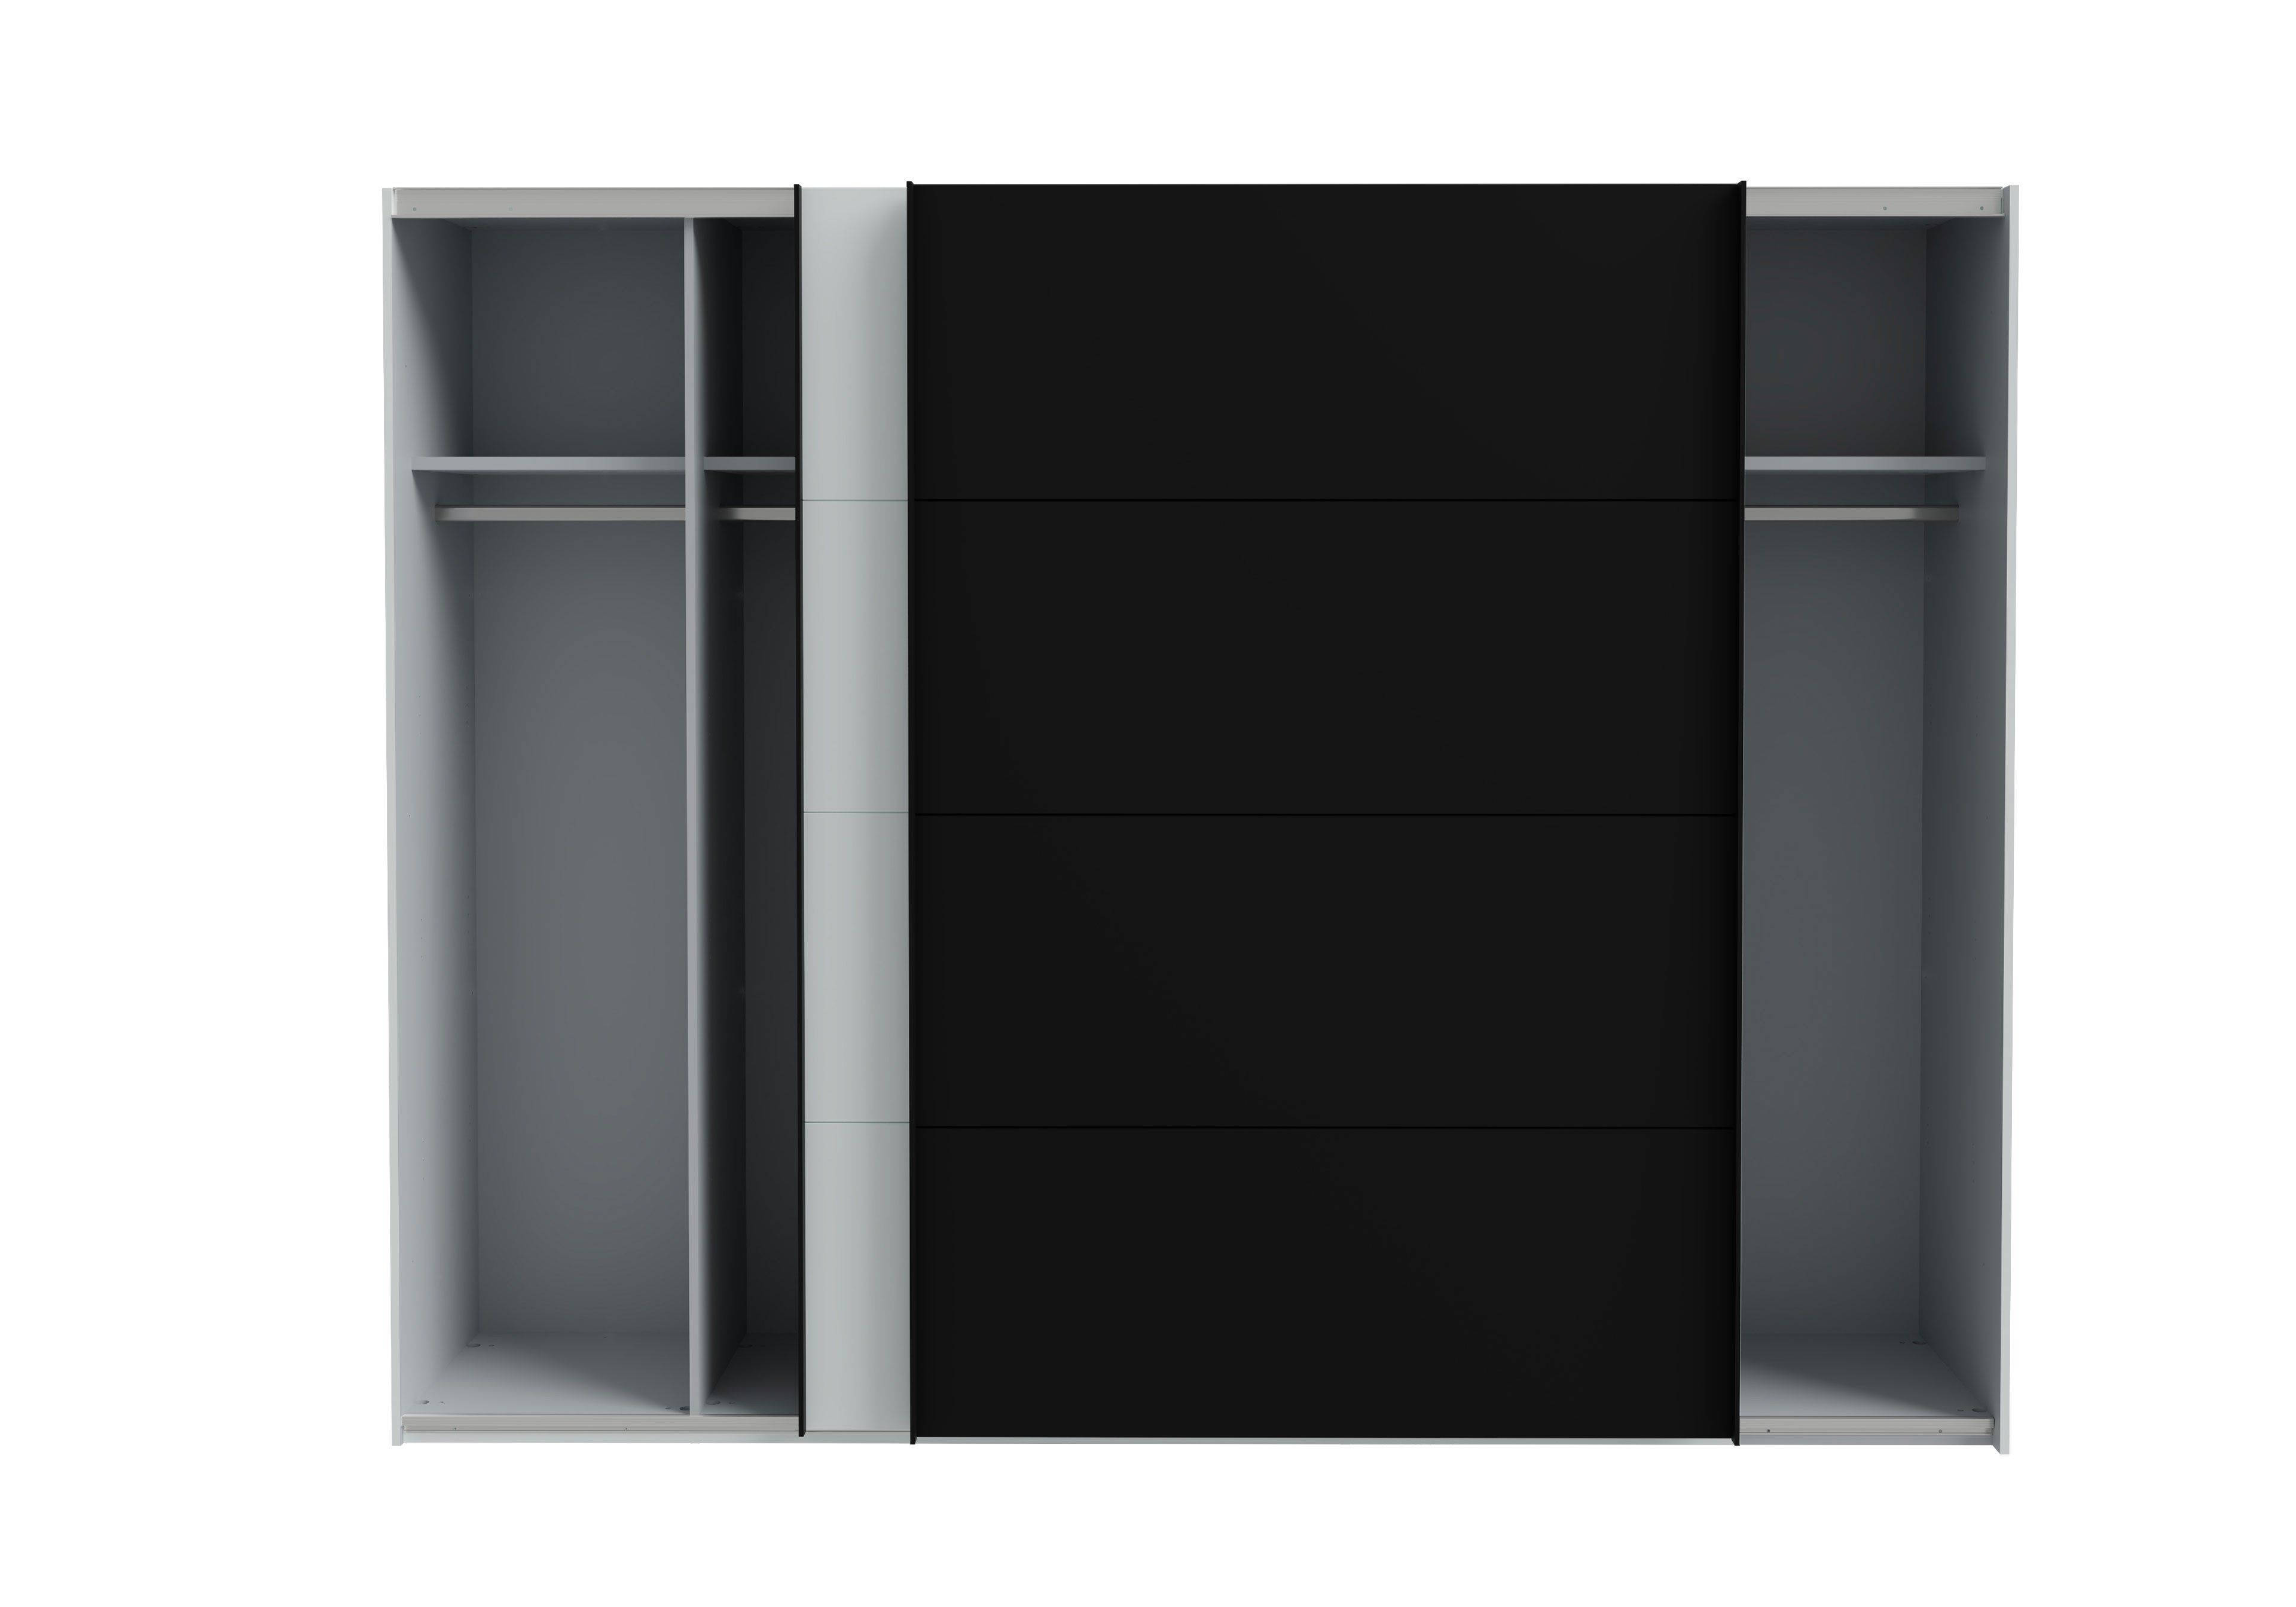 Forte High Rock Schrank ca. 270 cm breit grau - schwarz | Möbel Letz - Ihr  Online-Shop